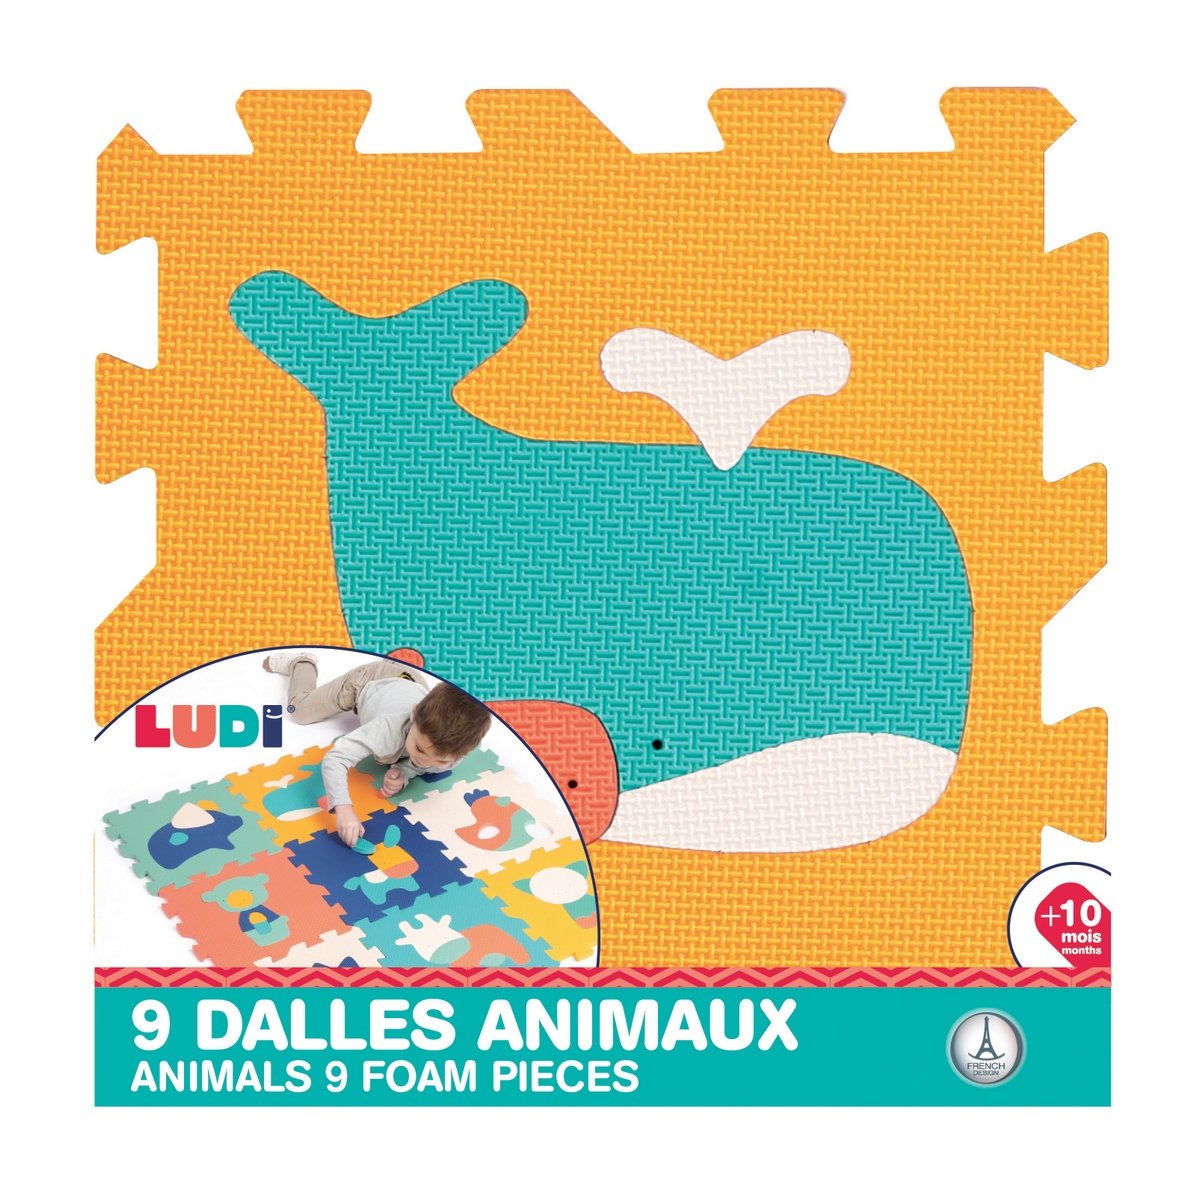 Explorez le monde des bébés animaux - Puzzle de 12 pièces pour enfants